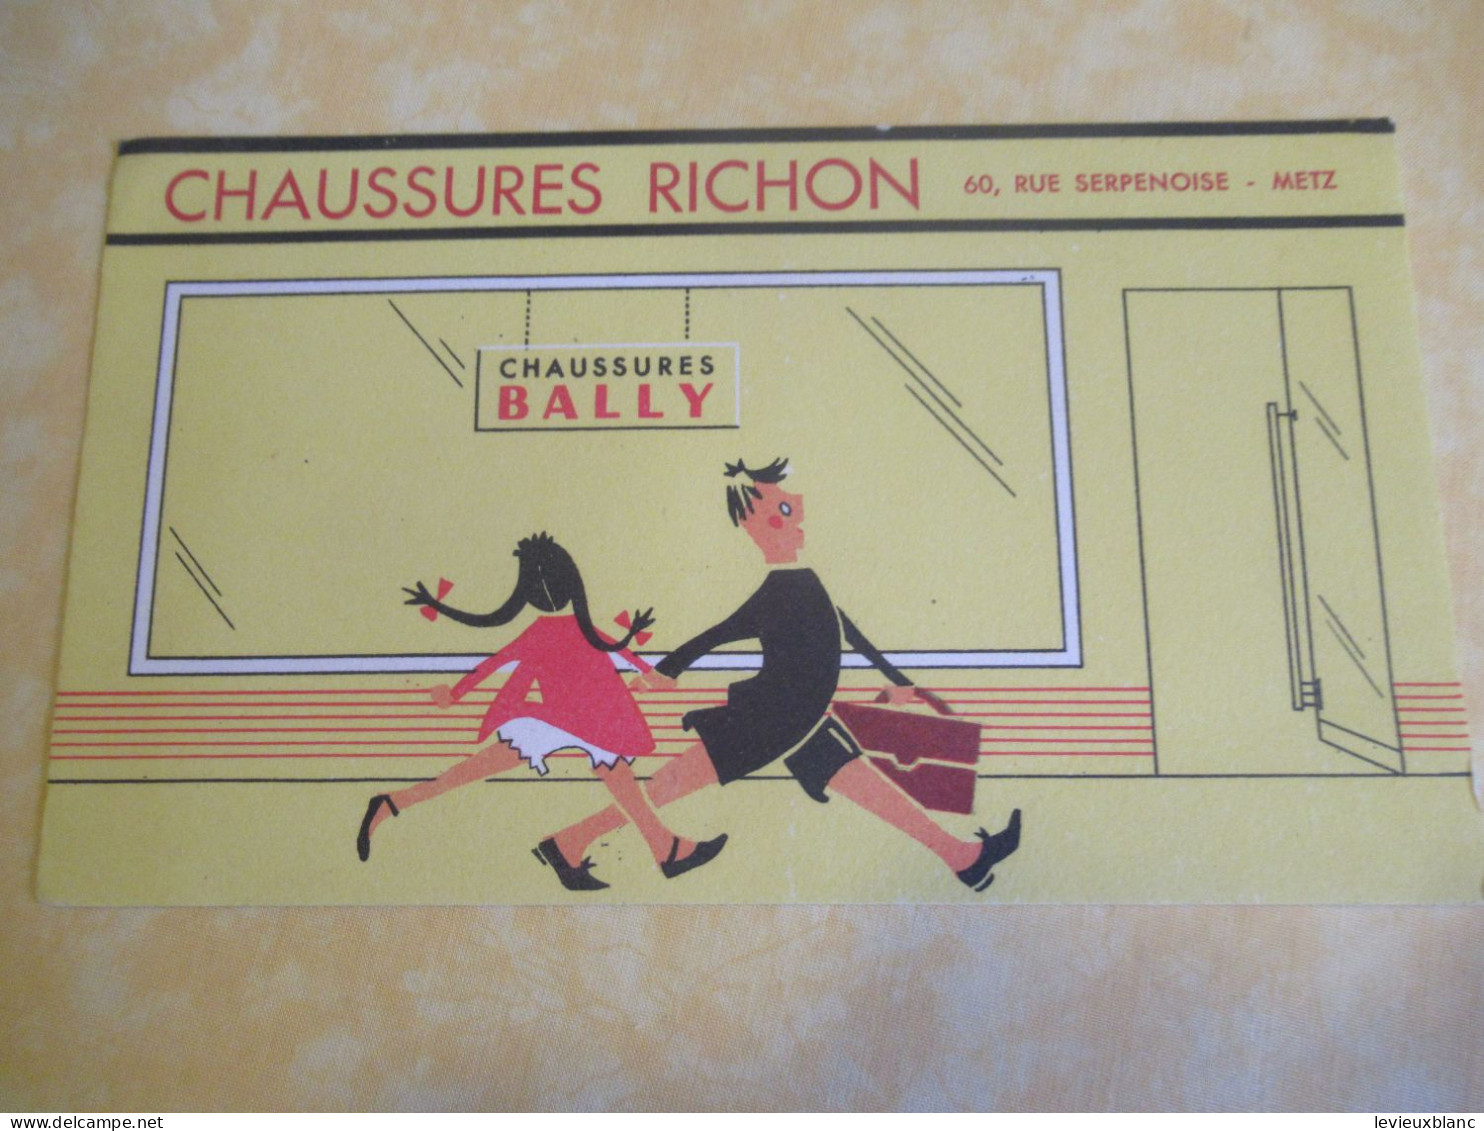 Chaussures BALLY/ Chaussures RICHON/ METZ/Enfants Allant à L'Ecole//Vers 1950-1960         BUV677 - Chaussures